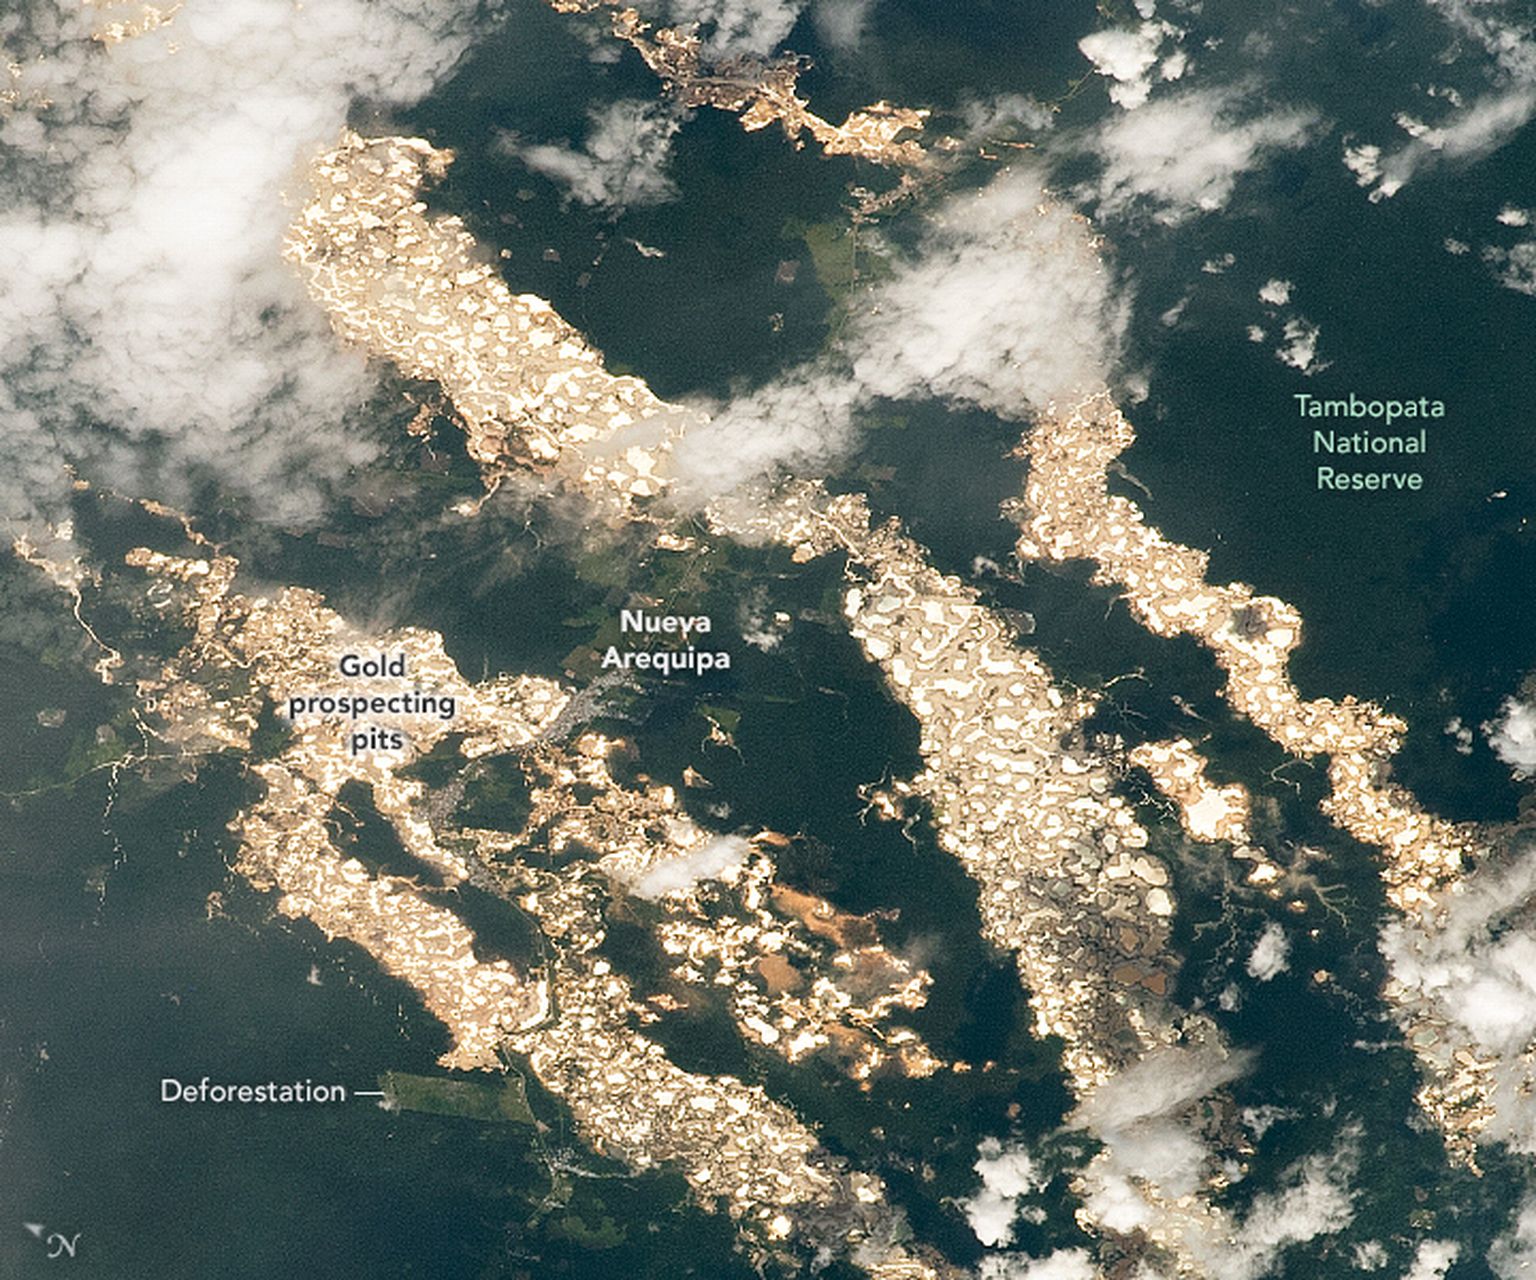 Rahvusvahelises kosmosejaamas (ISS) 24. detsembril 2020 tehtud foto Peruu Madre de Dios osariigi vihmametsa alast. Tegemist ei ole kullajõgedega, vaid saastunud pinnasega, millelt peegeldub päikesevalgus